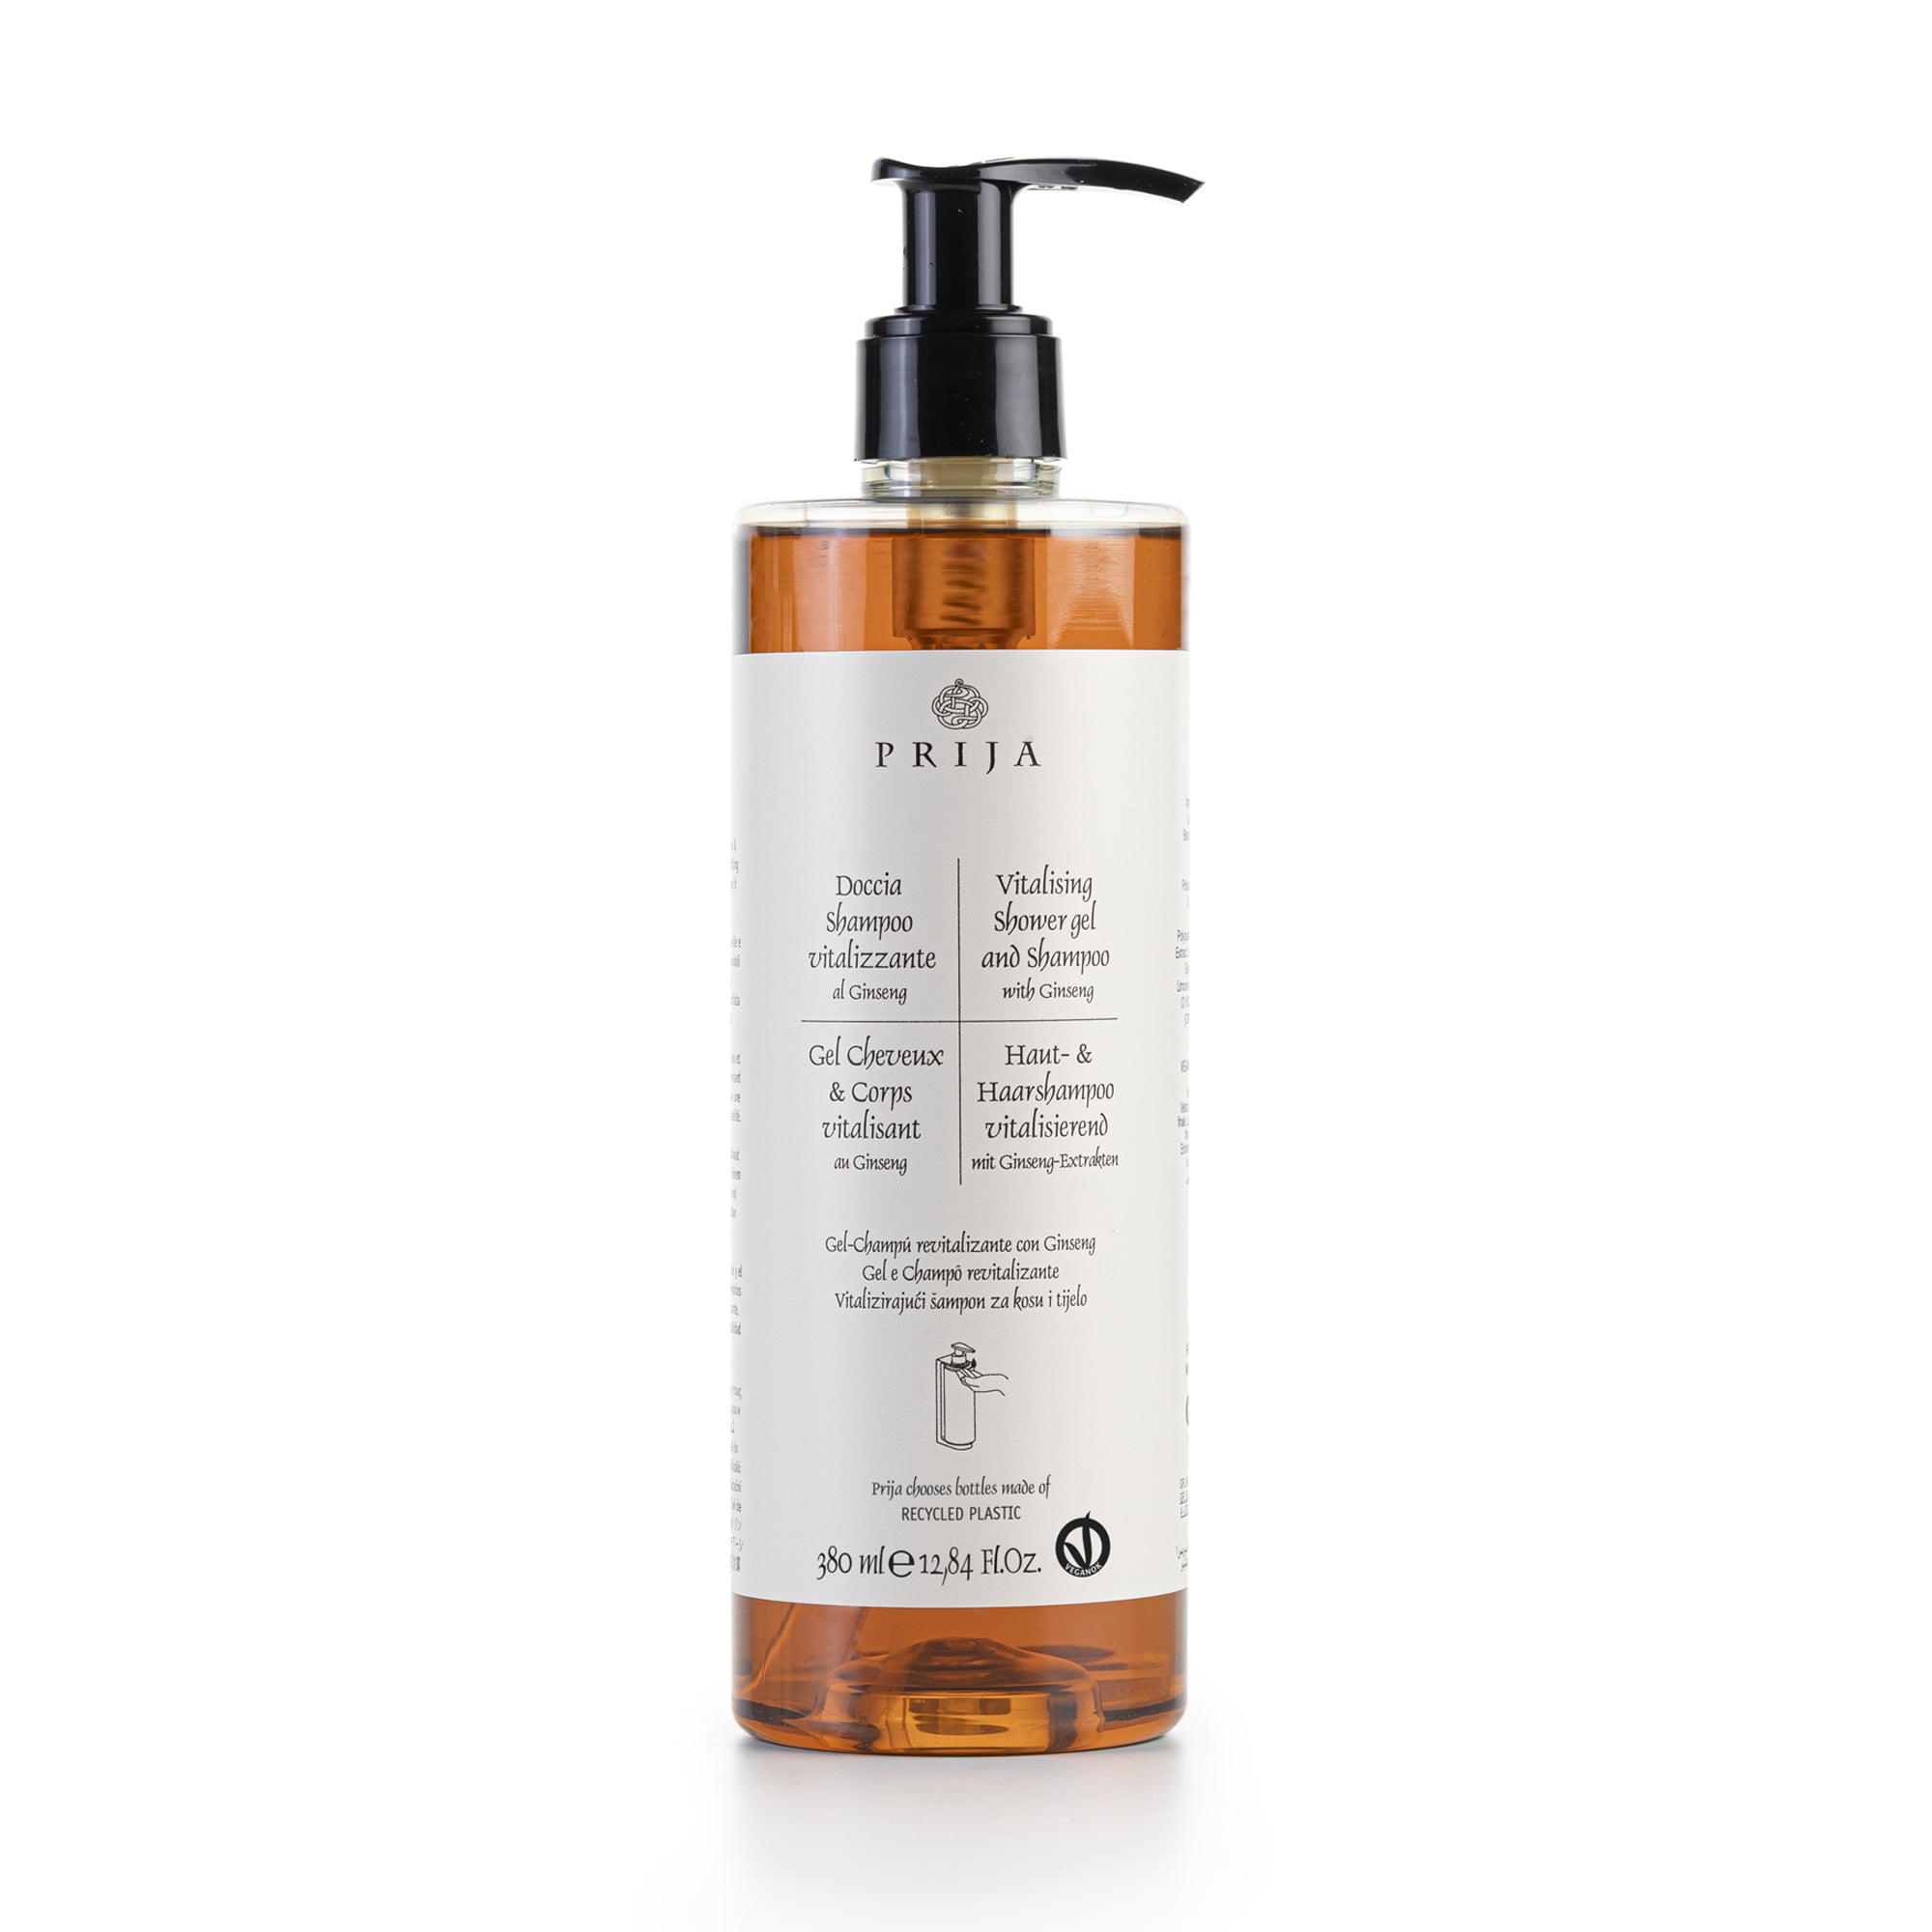 Prija Vitalising Shower Gel And Shampoo With Locked Pump VEGANOK Certified (380 ml) - 18Pack